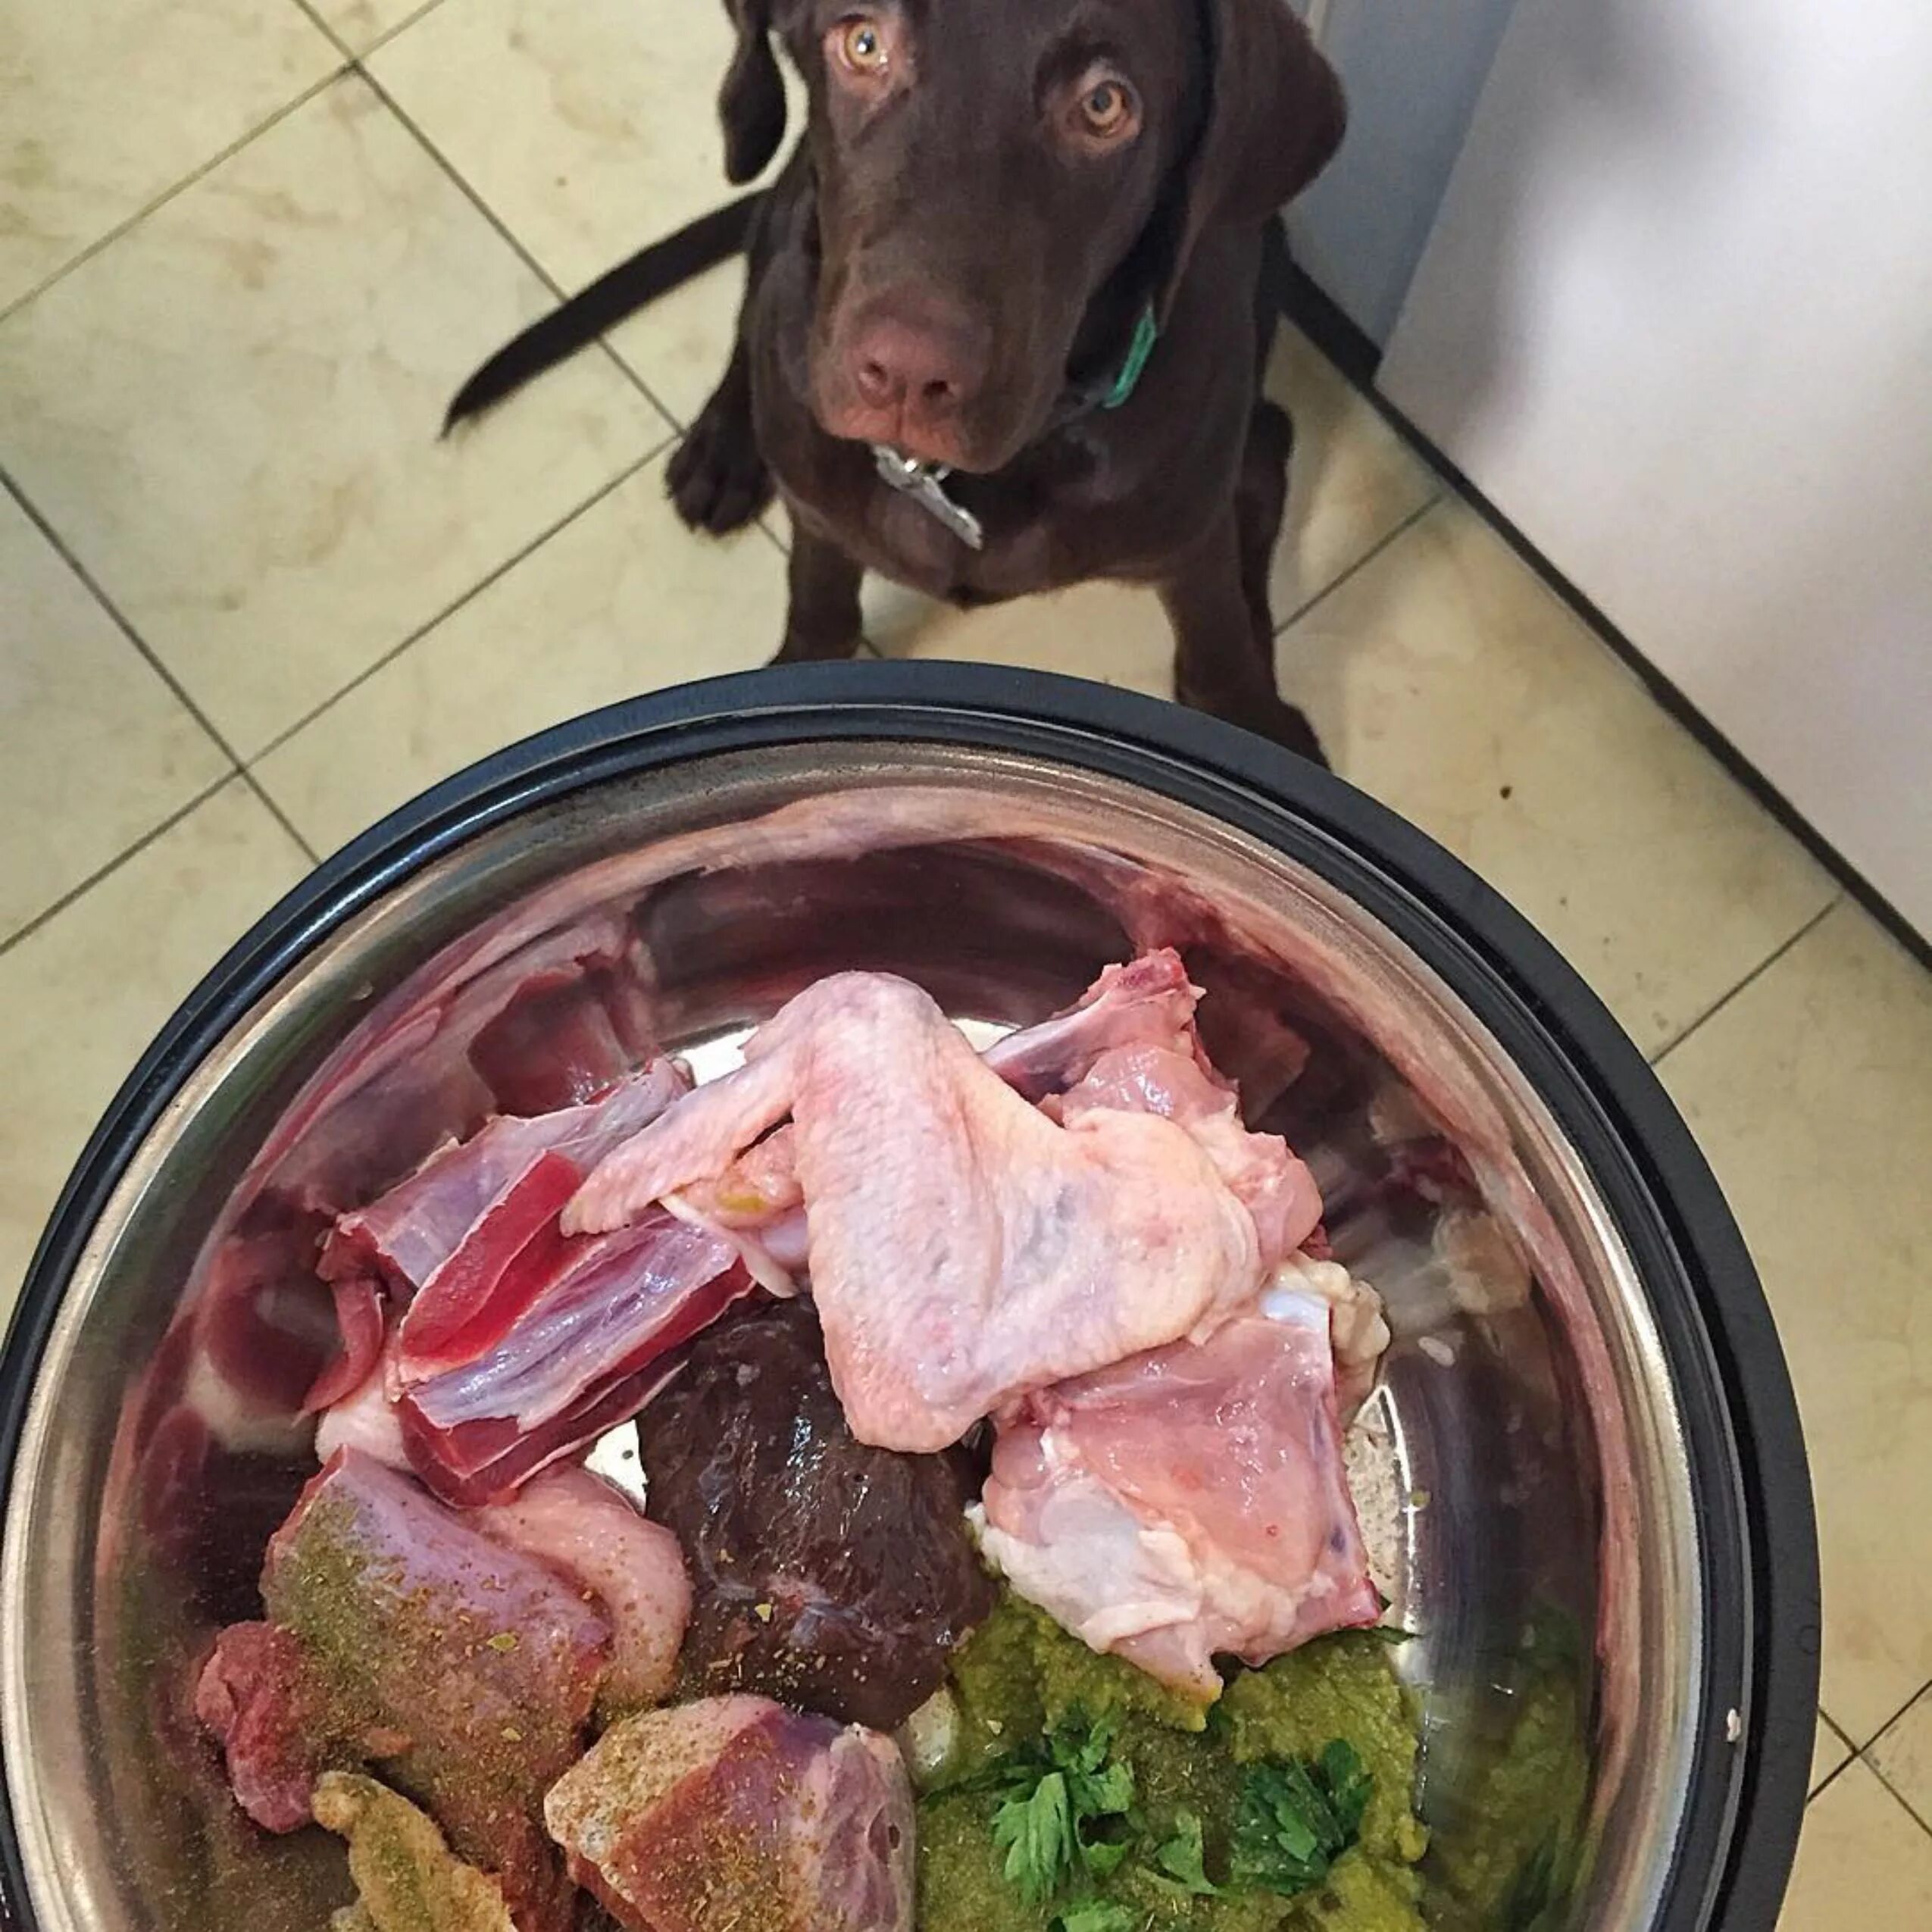 Можно кормить собаку сырым мясом